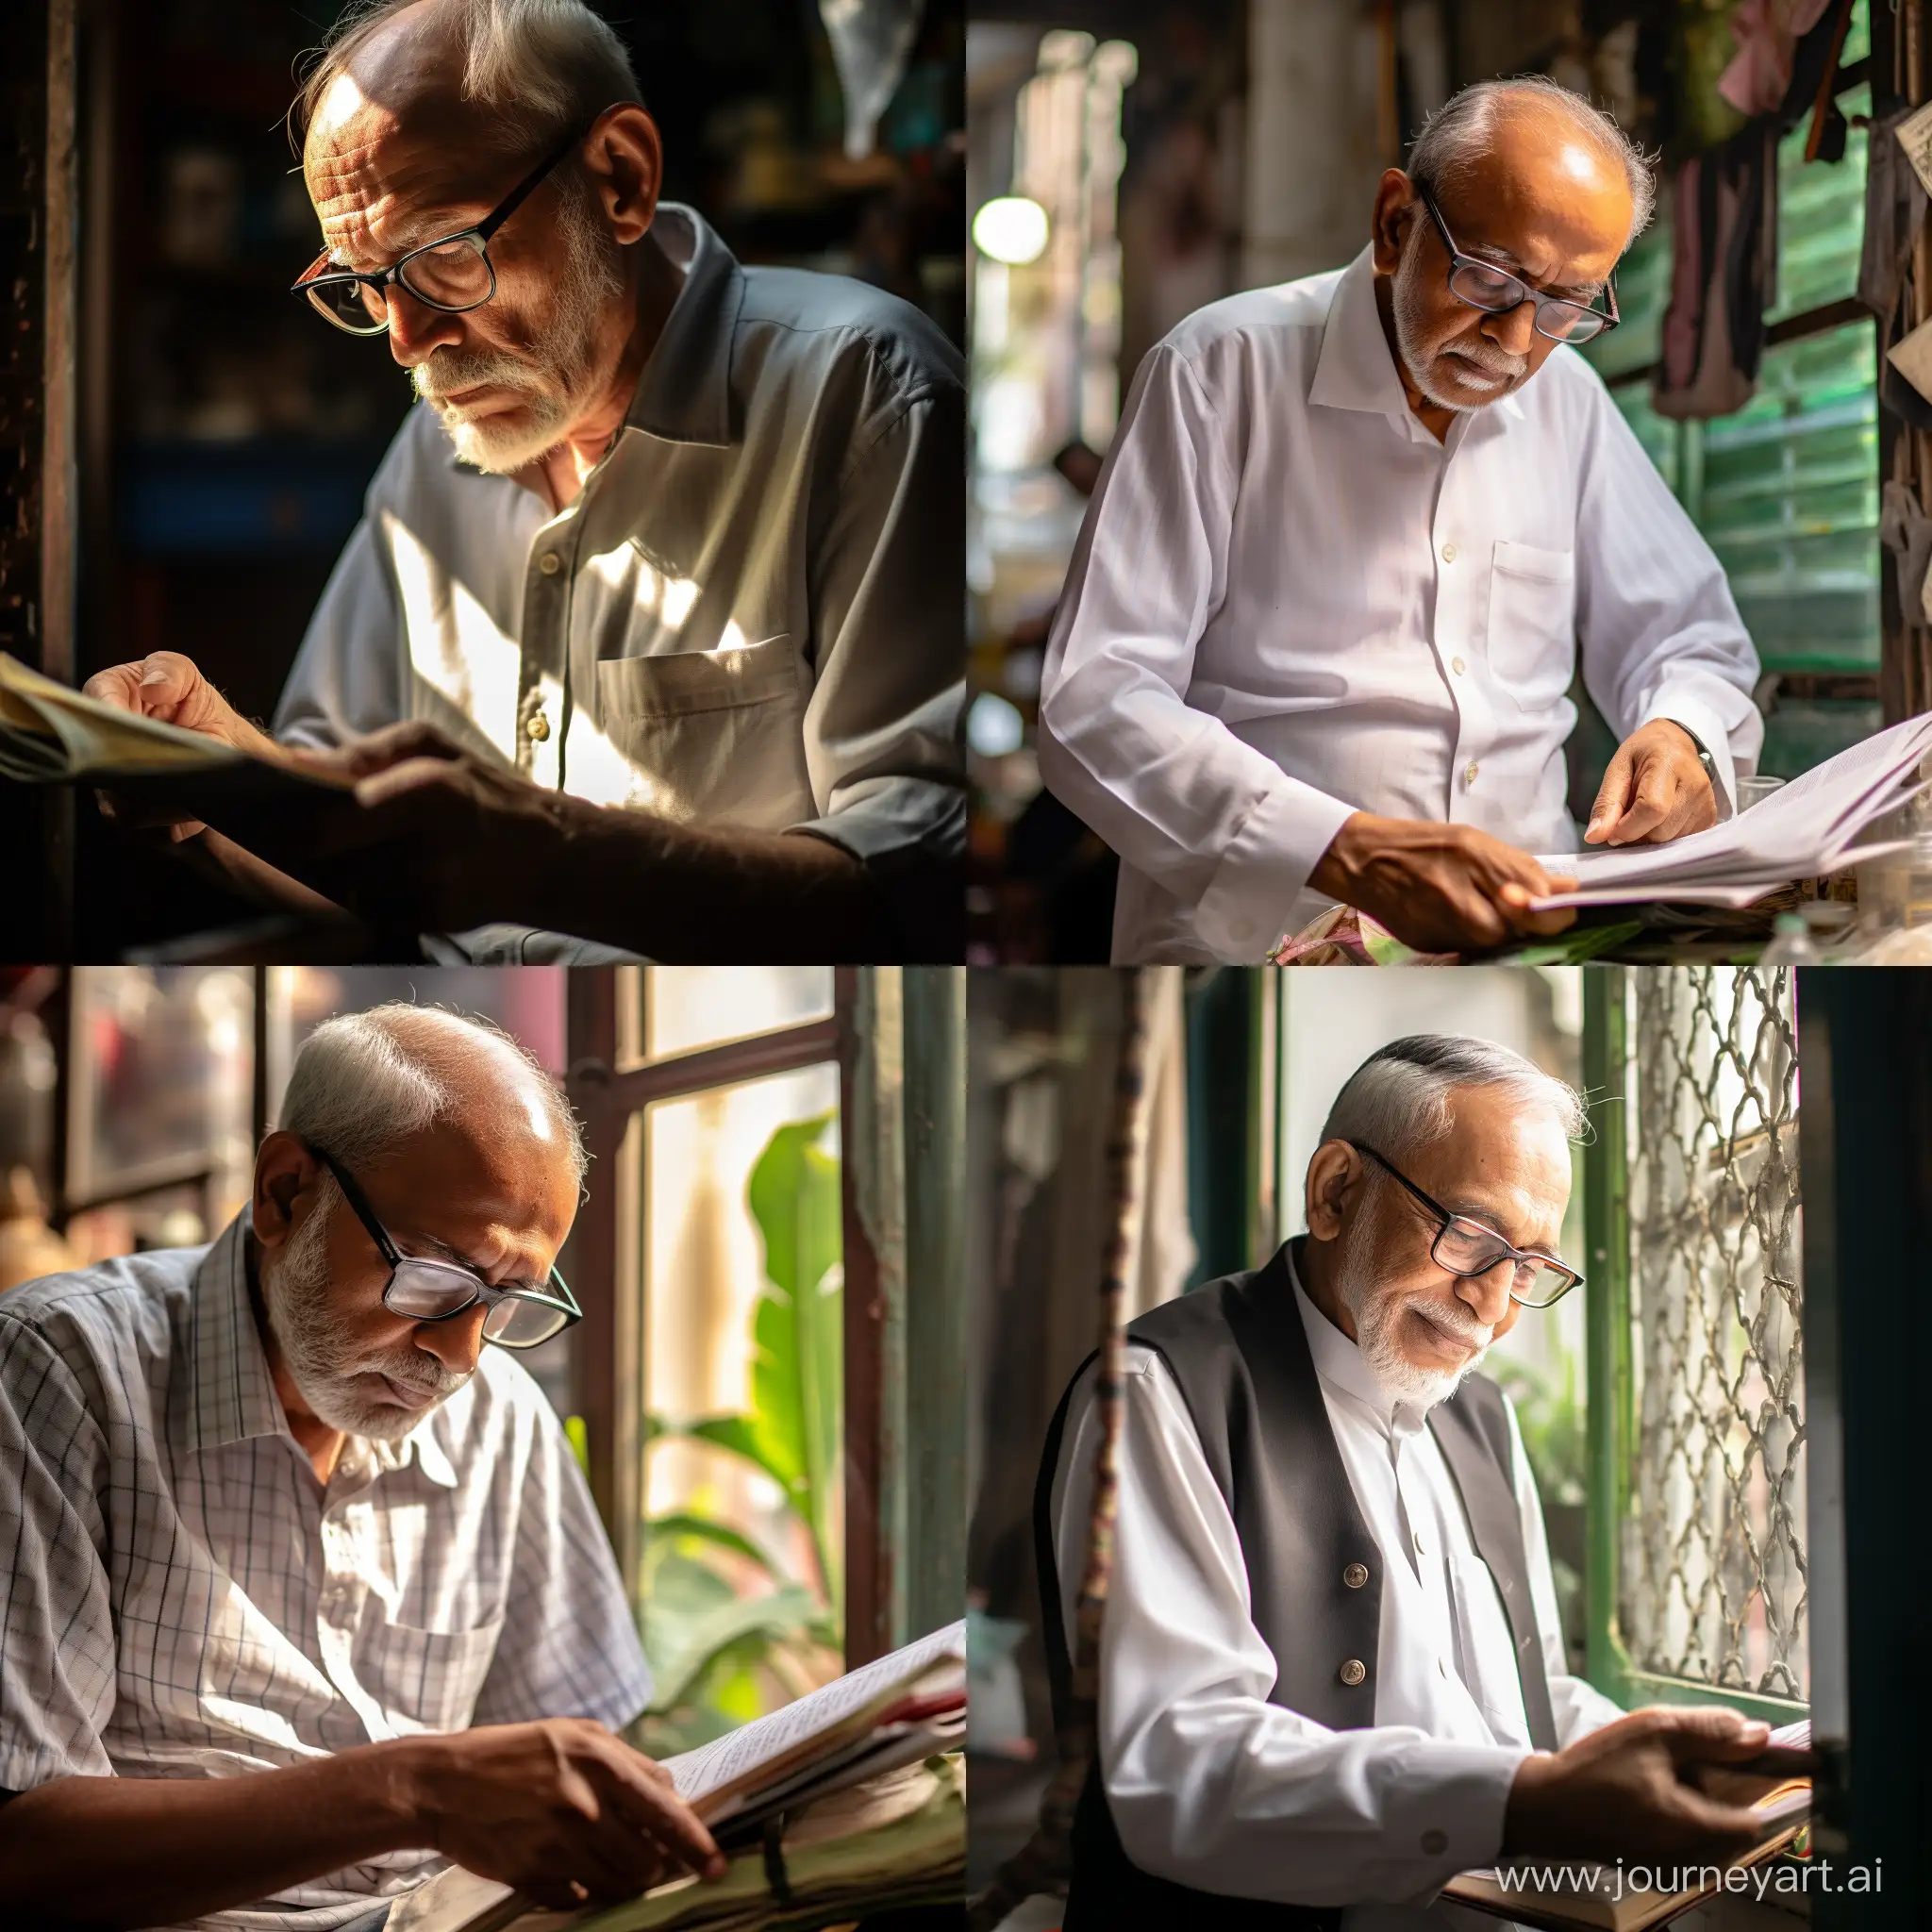 Urban-Serenity-Elderly-Gentleman-Engrossed-in-Reading-by-the-Window